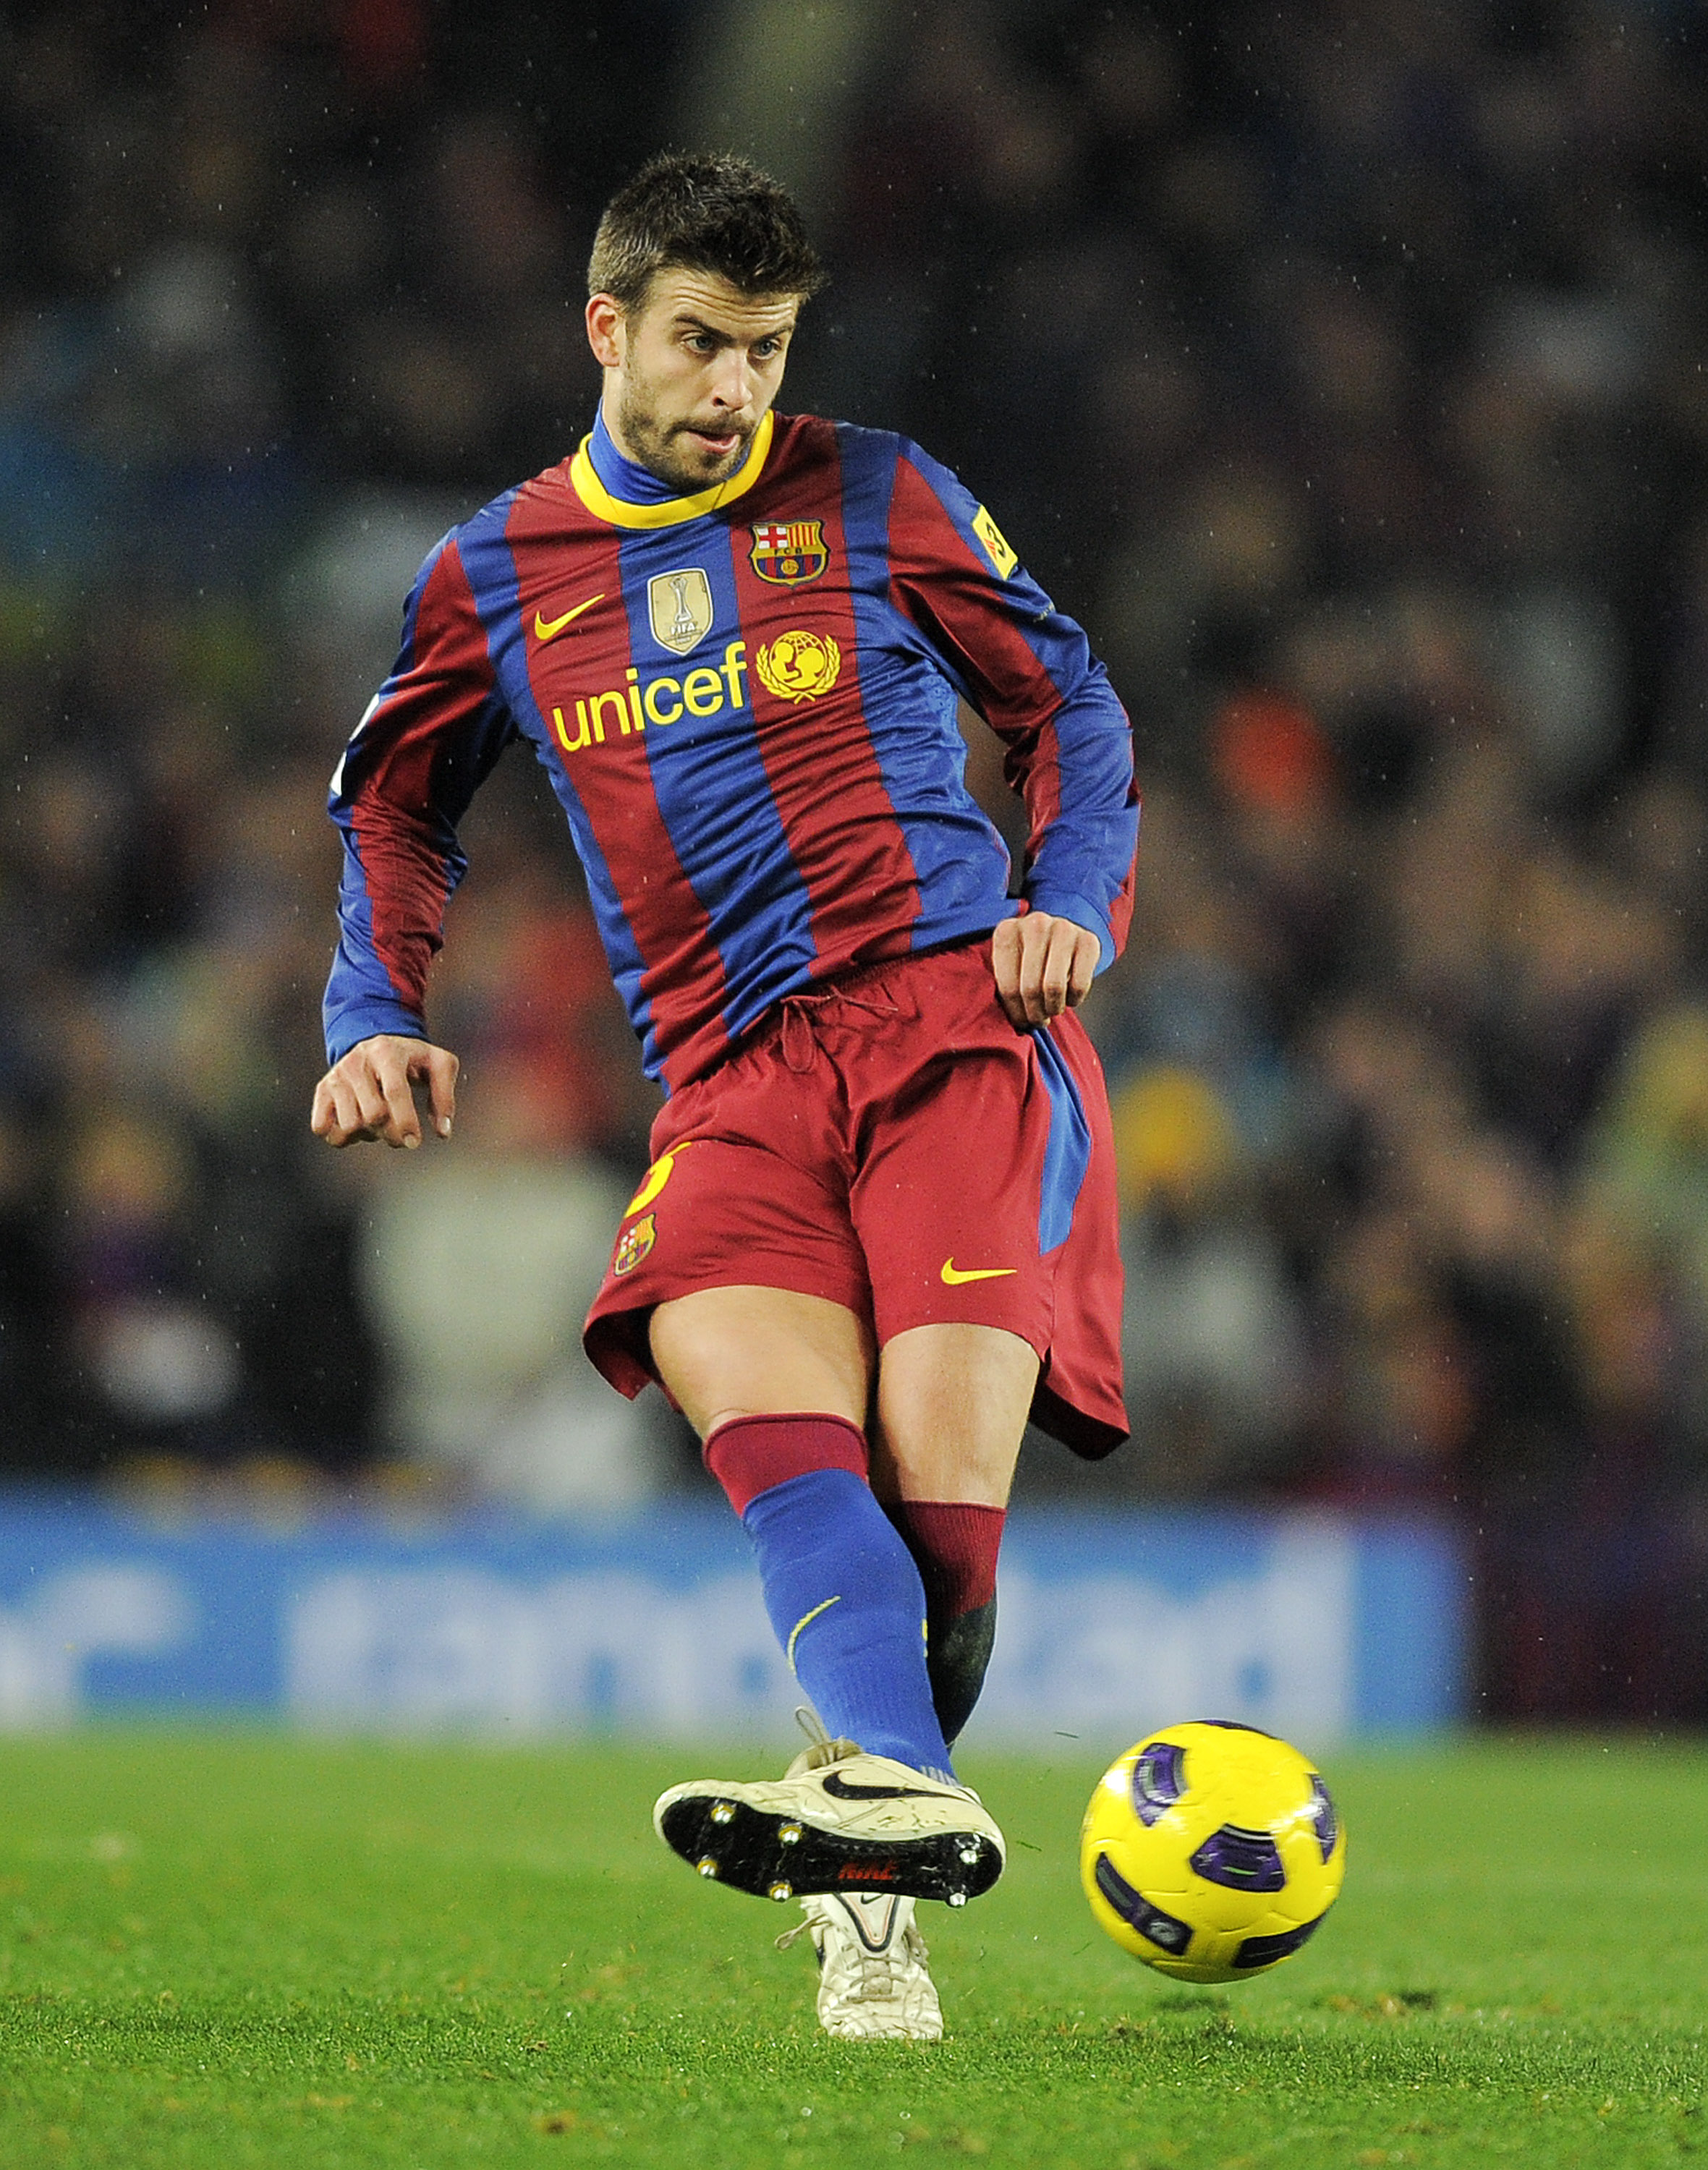 Vuitton's Soccer Stars”June 2010